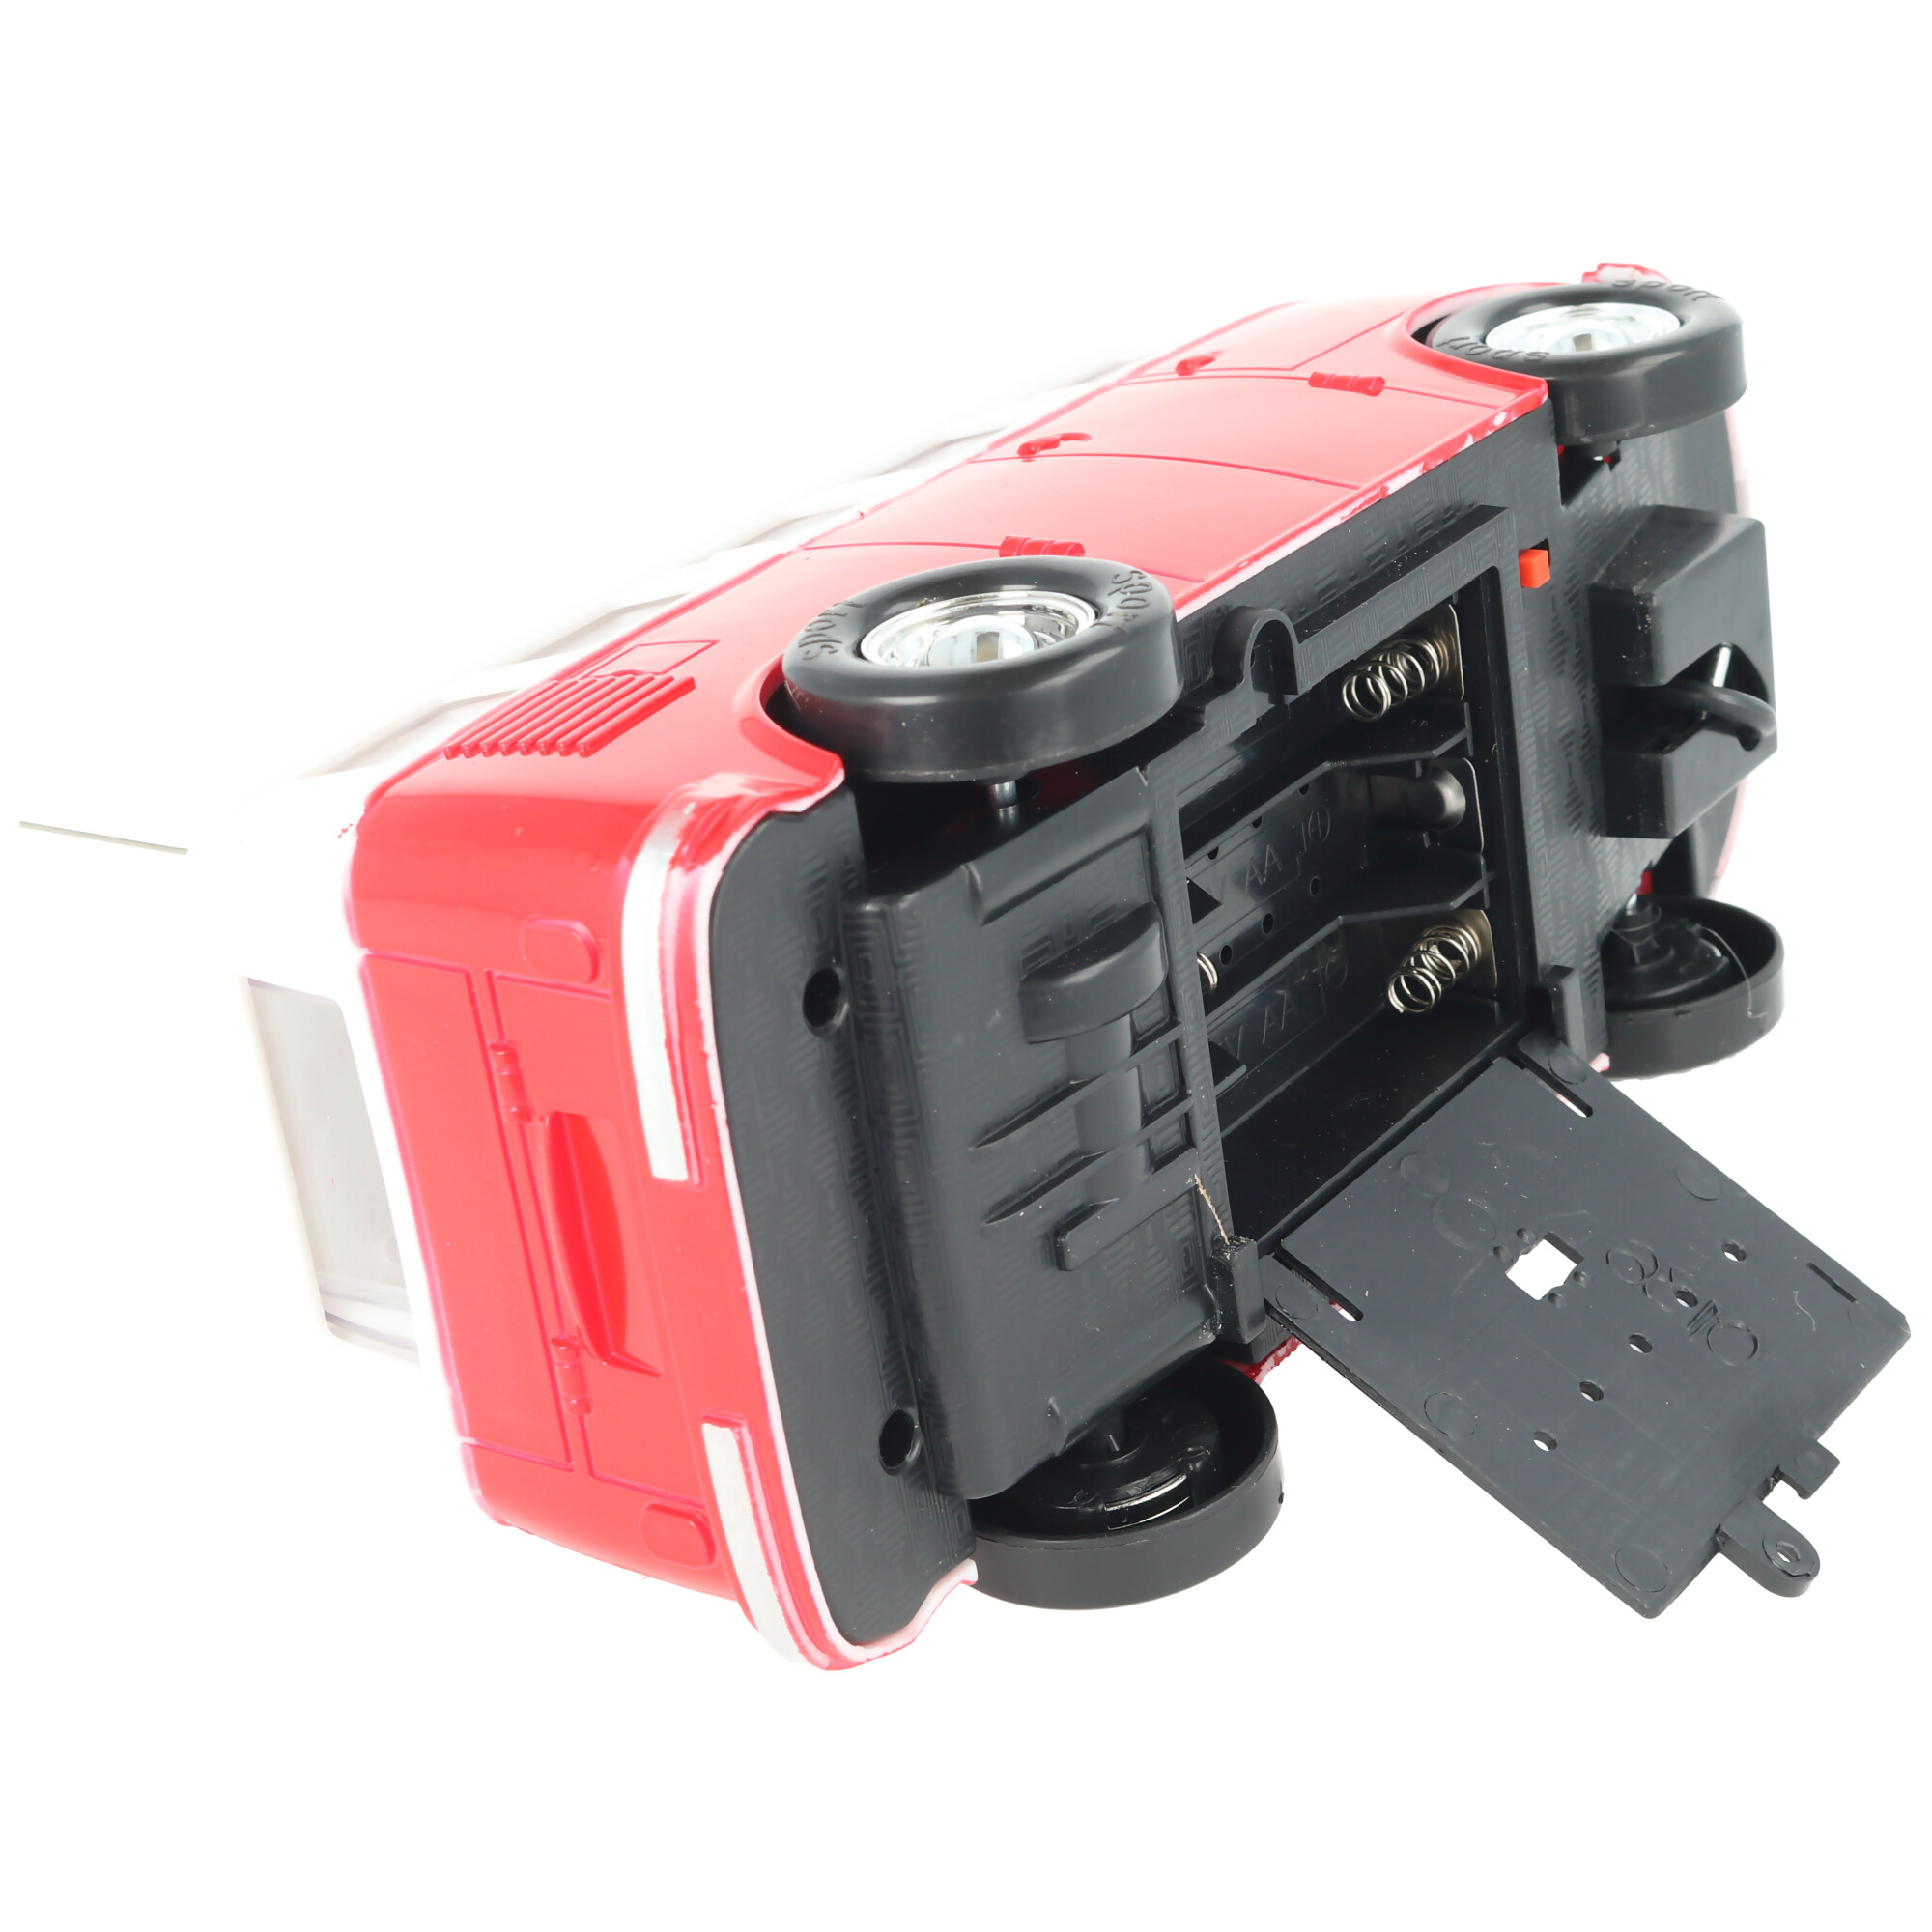 Retrobus Bulli RC-Model im Maßstab 1:24 Farbe rot inklusive 5 AA Mignon Batterien